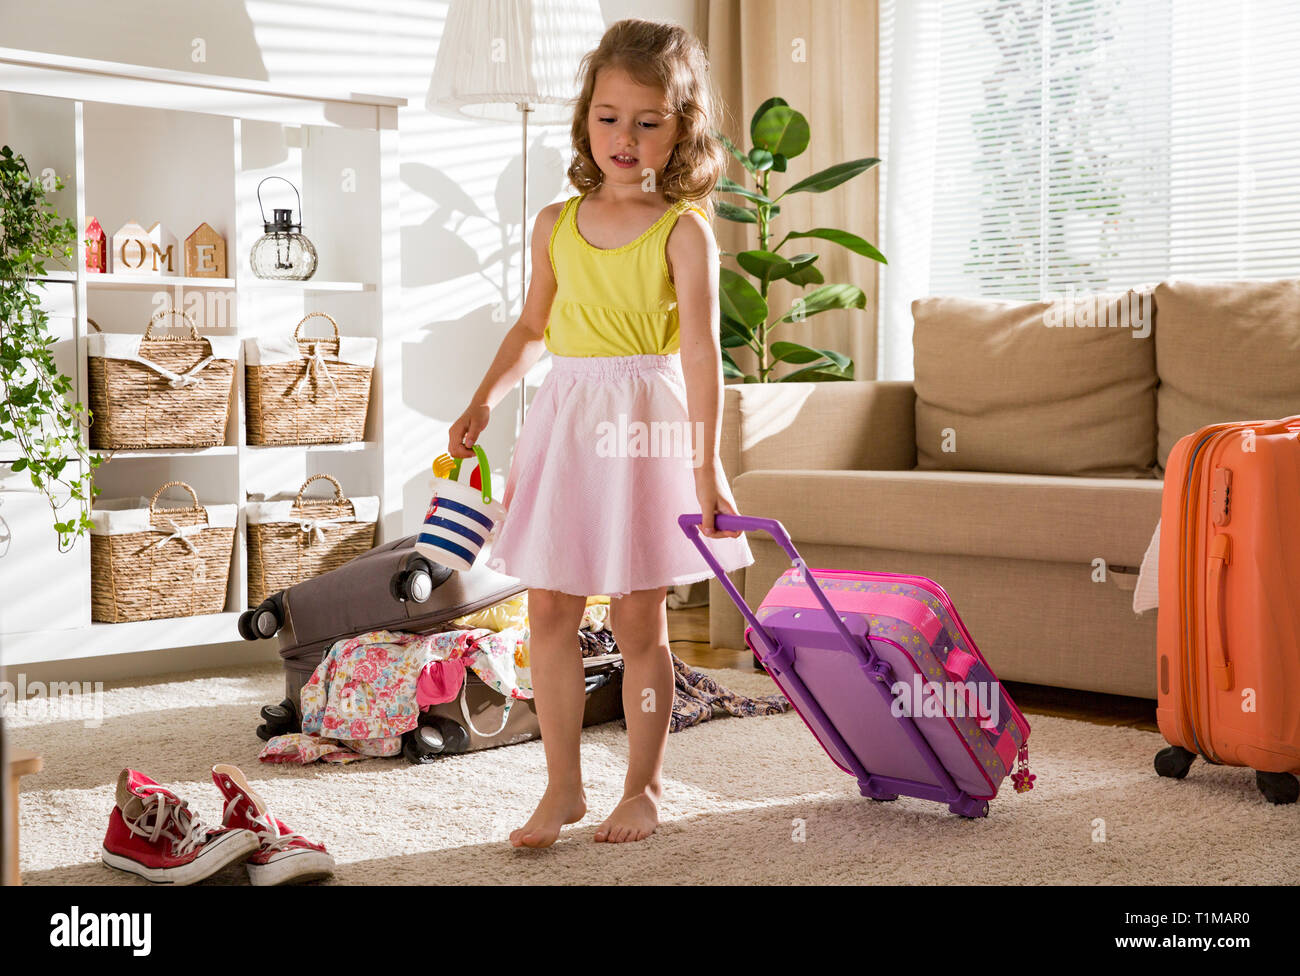 Heureuse petite fille assise dans la salle de séjour à la maison, soigneusement l'emballage des vêtements d'été colorés et des jouets en assurance valise pour un nouveau voyage. T de l'enfant Banque D'Images